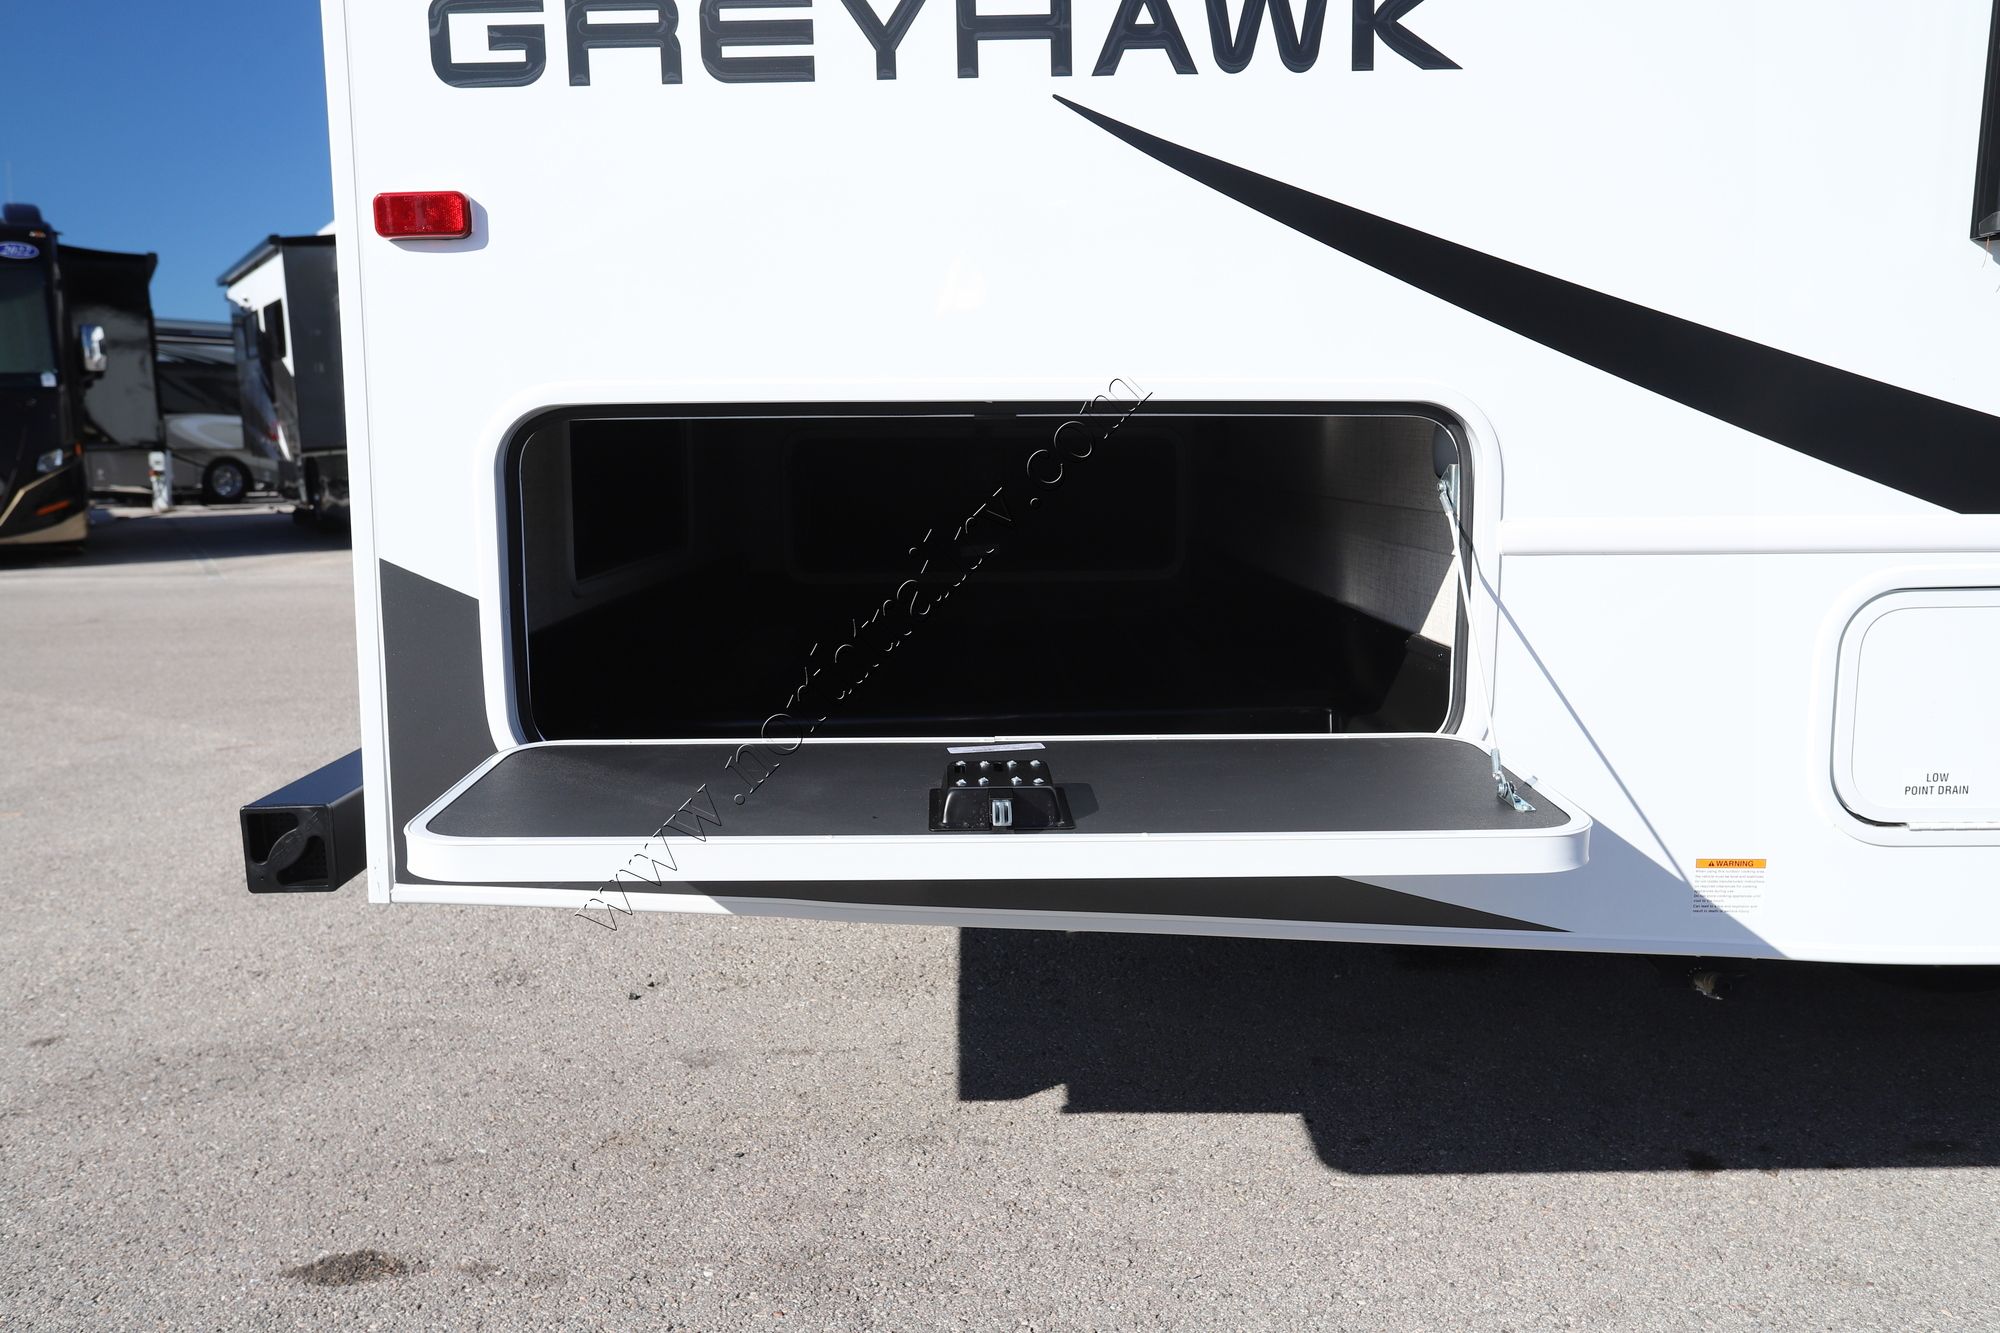 New 2023 Jayco Greyhawk 30Z Class C  For Sale